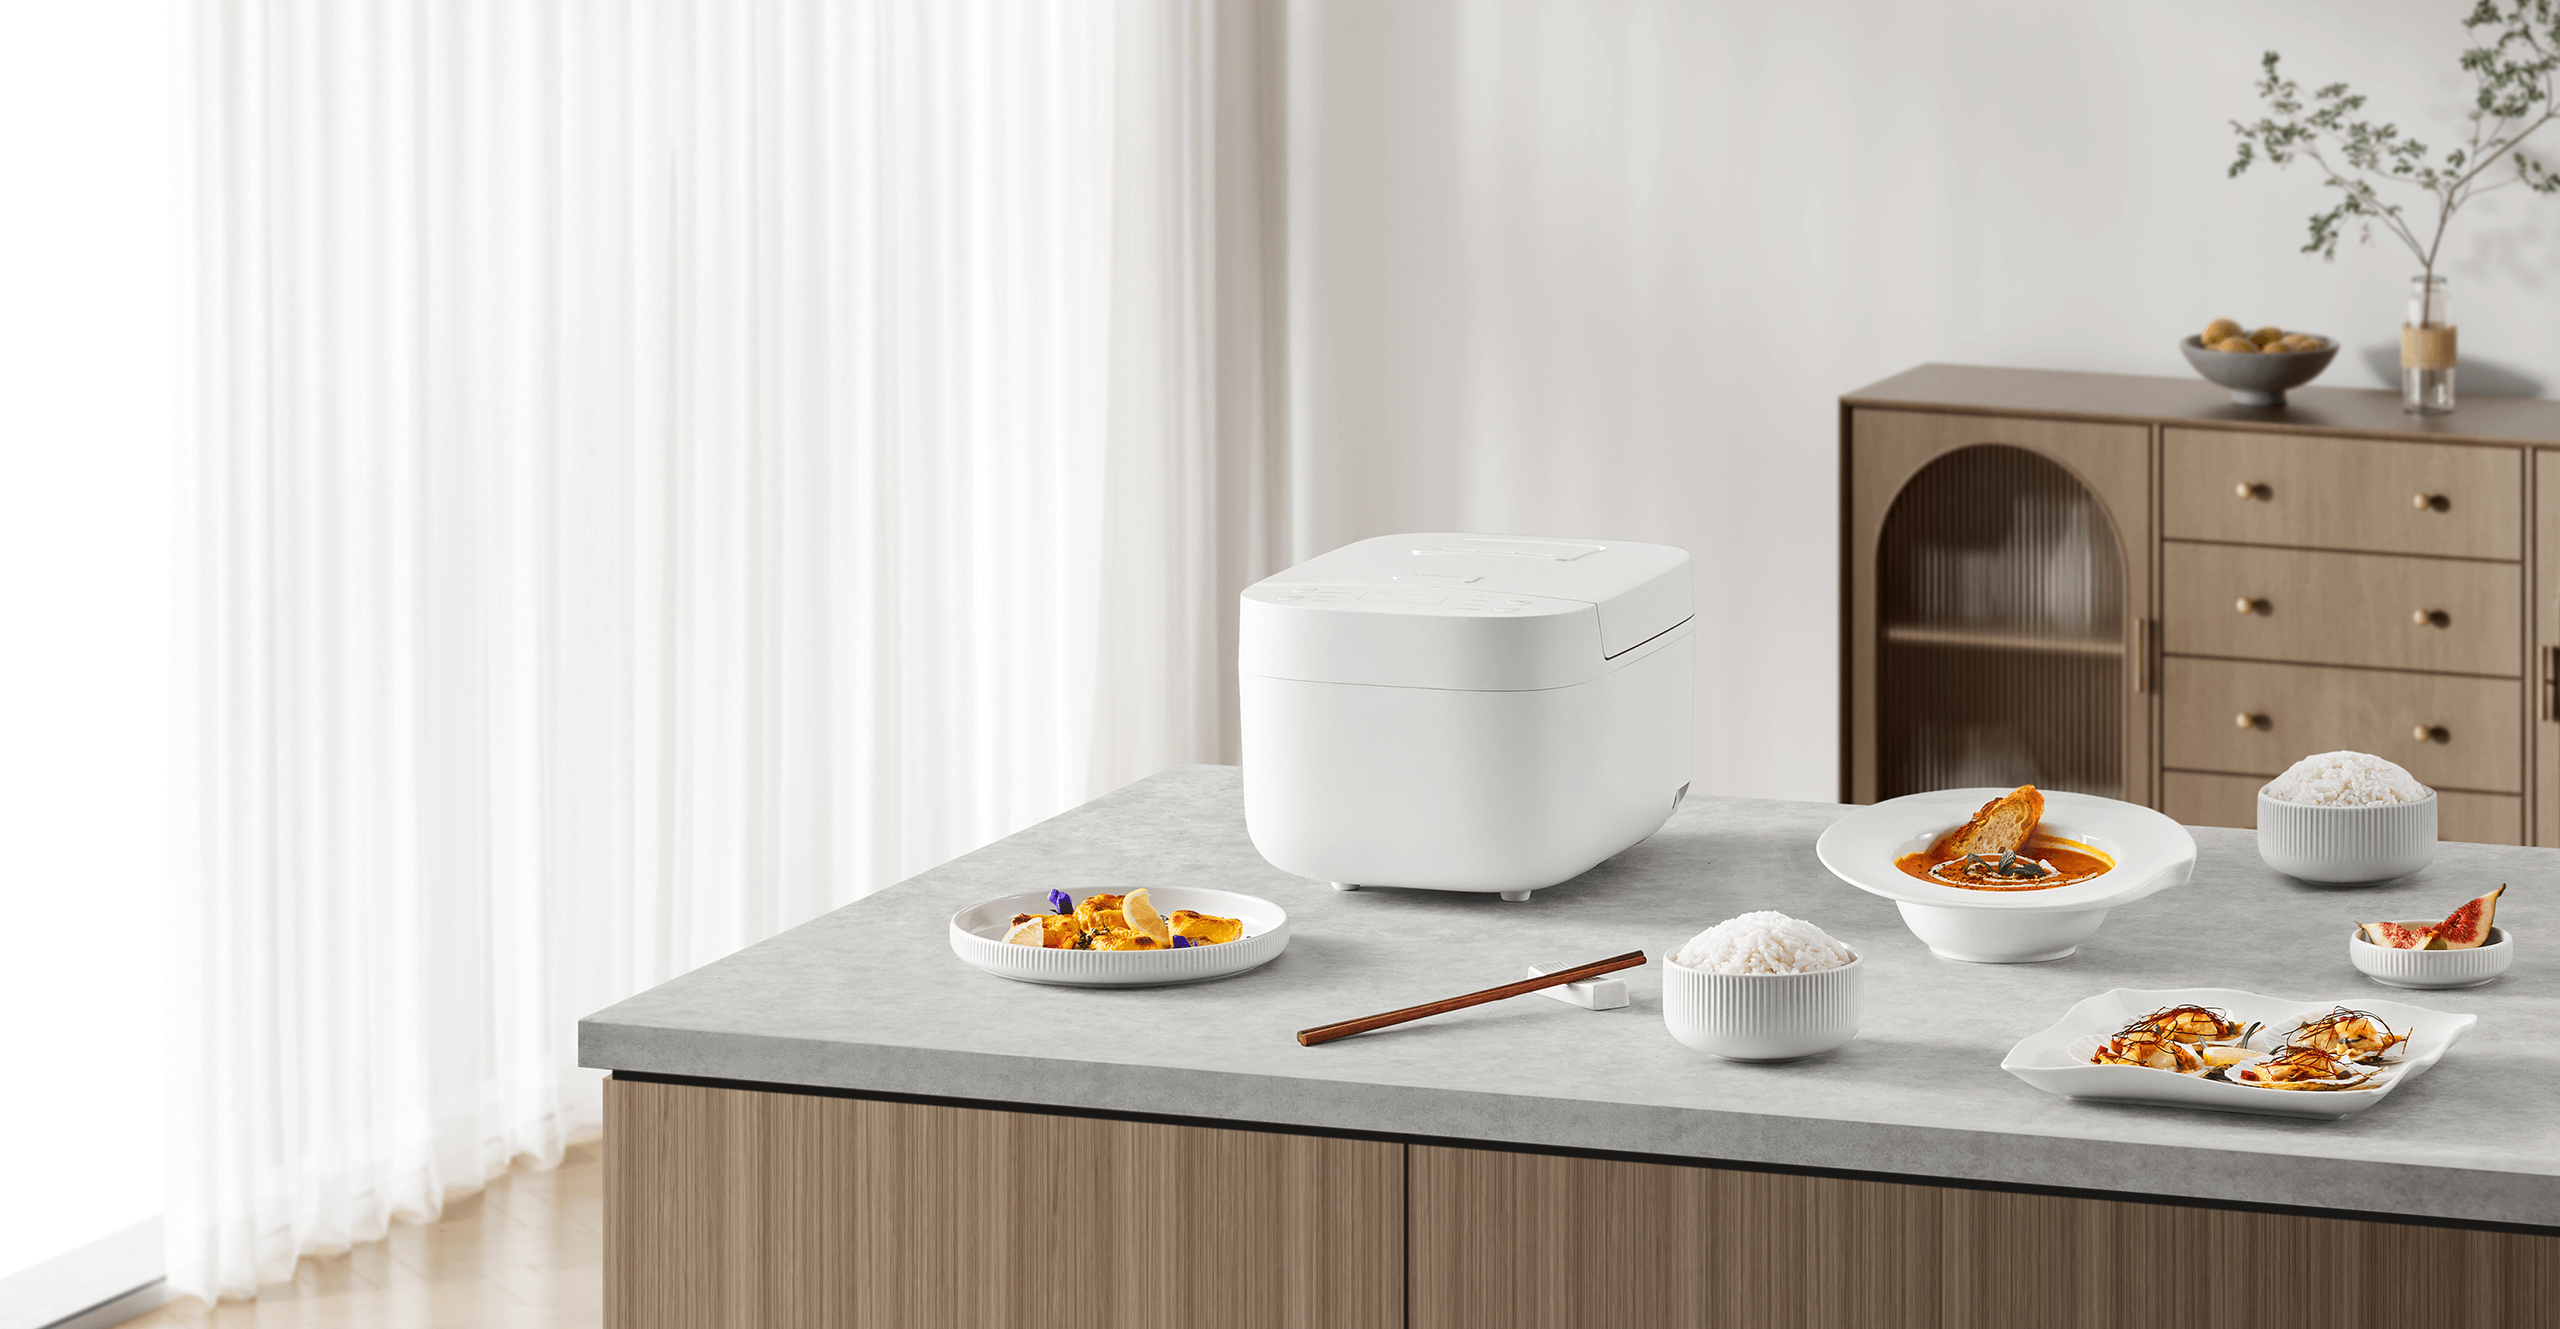 Xiaomi Smart Multifunctional Rice Cooker